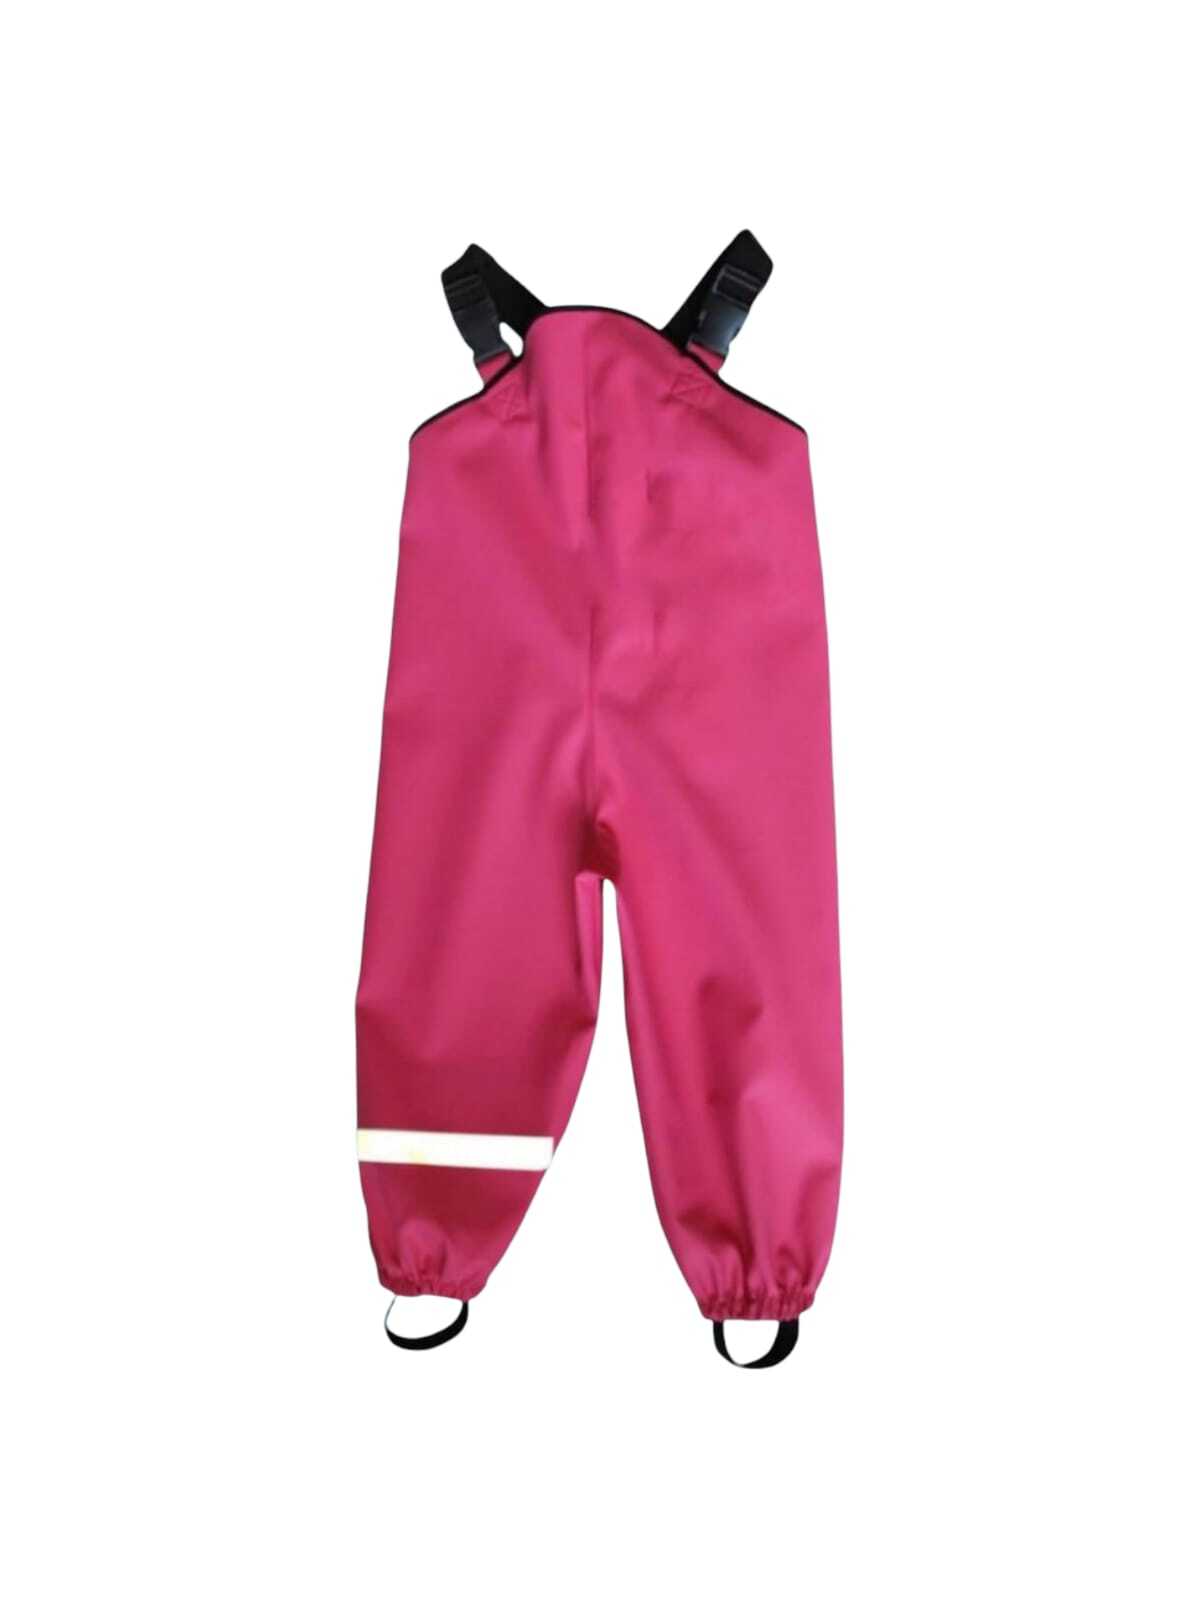 Резиновые штаны для детей. Тим полукомбинезон непромокайка розовый. Штаны непромокайки тим. Полукомбинезон-непромокайка 26/92-98 синий v 51732. Непромокаемый комбинезон Smail.